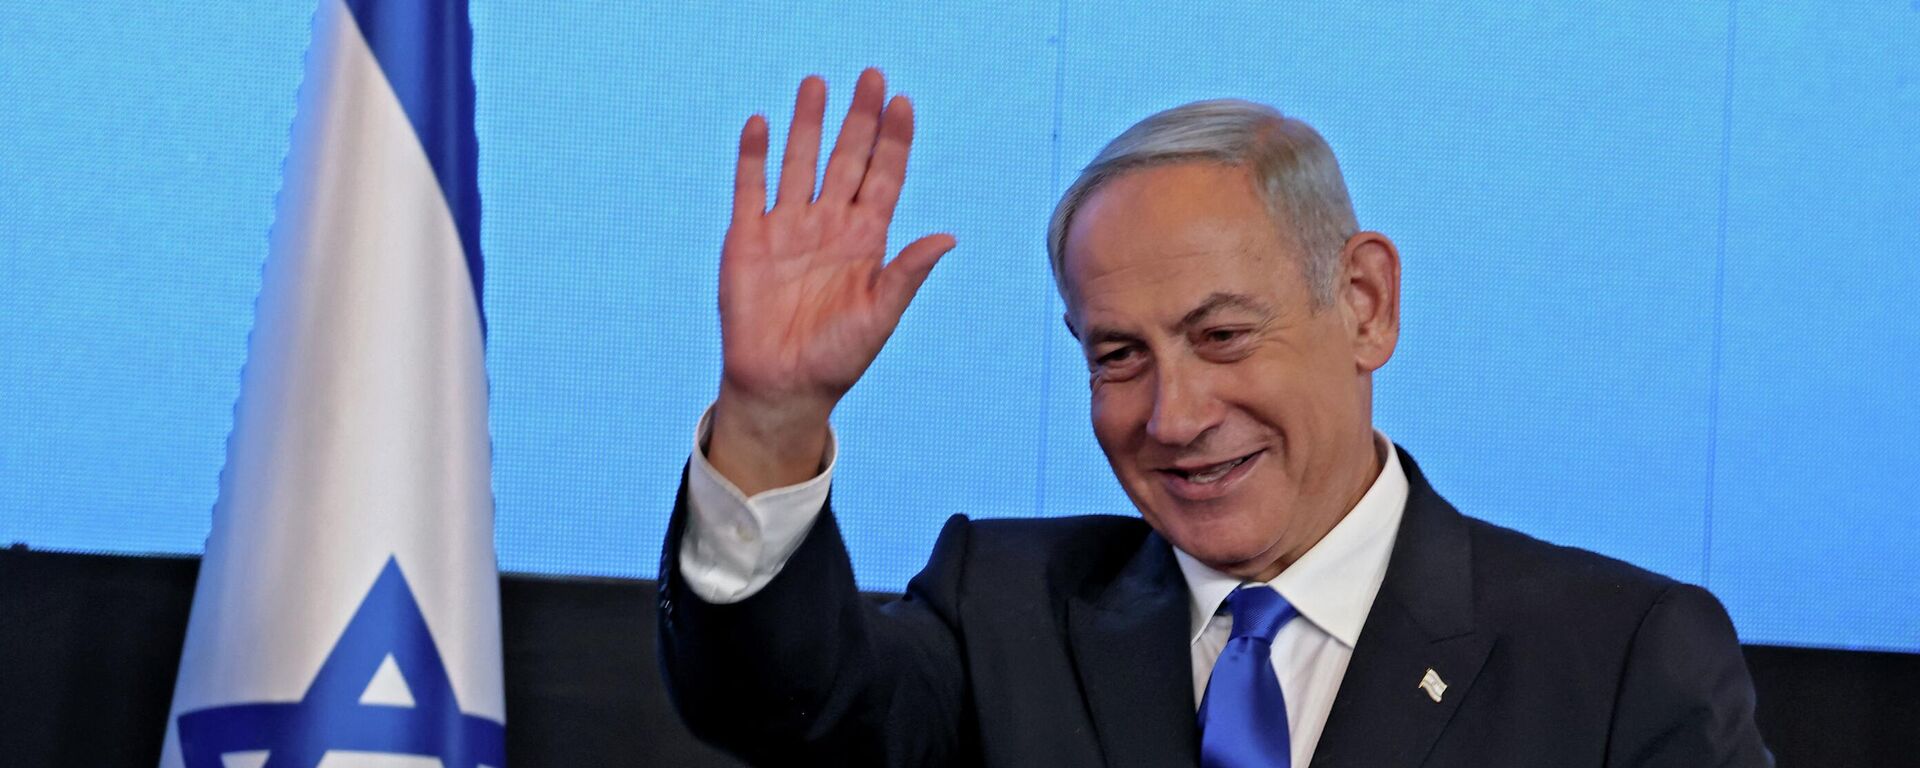 زعيم المعارضة الإسرائيلية بنيامين نتنياهو بعد فوزه في الانتخابات العامة في إسرائيل، نوفمبر/ تشرين الثاني 2022. - سبوتنيك عربي, 1920, 30.12.2022